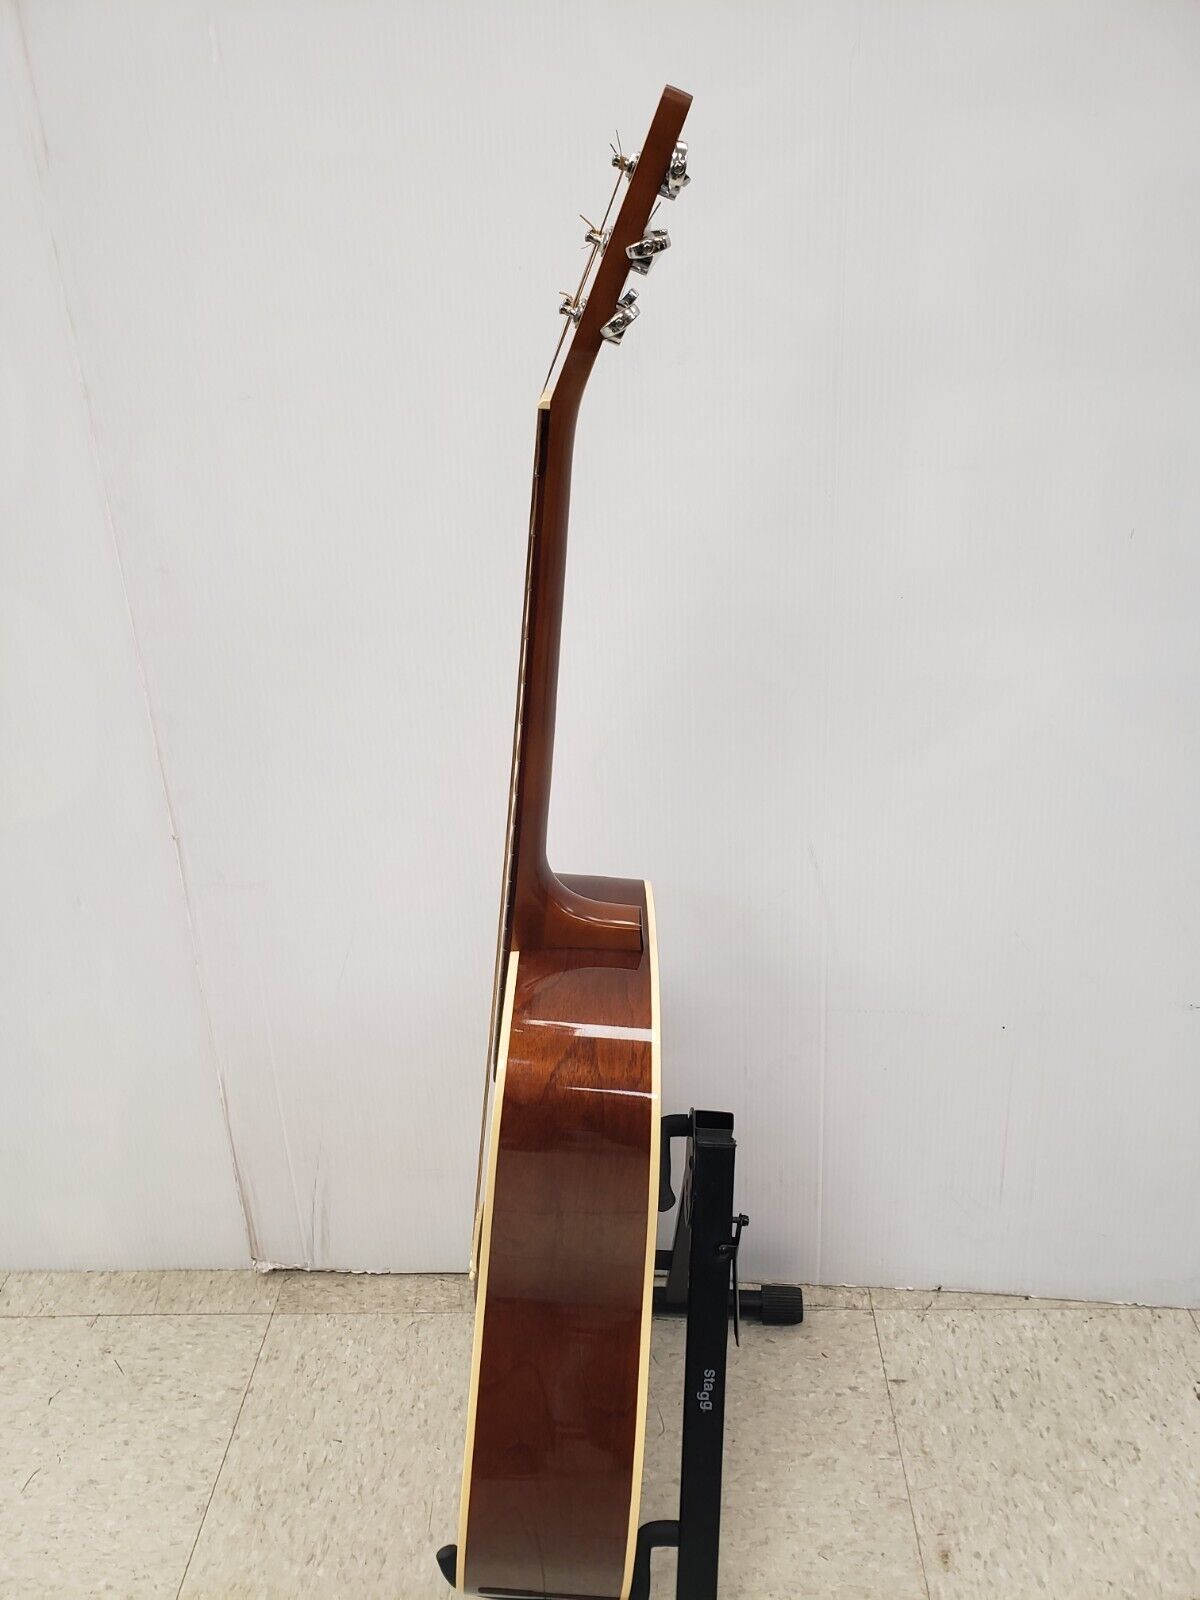 (I-29437) Simon & Patrick 28993 Luthier Acoustic Guitar